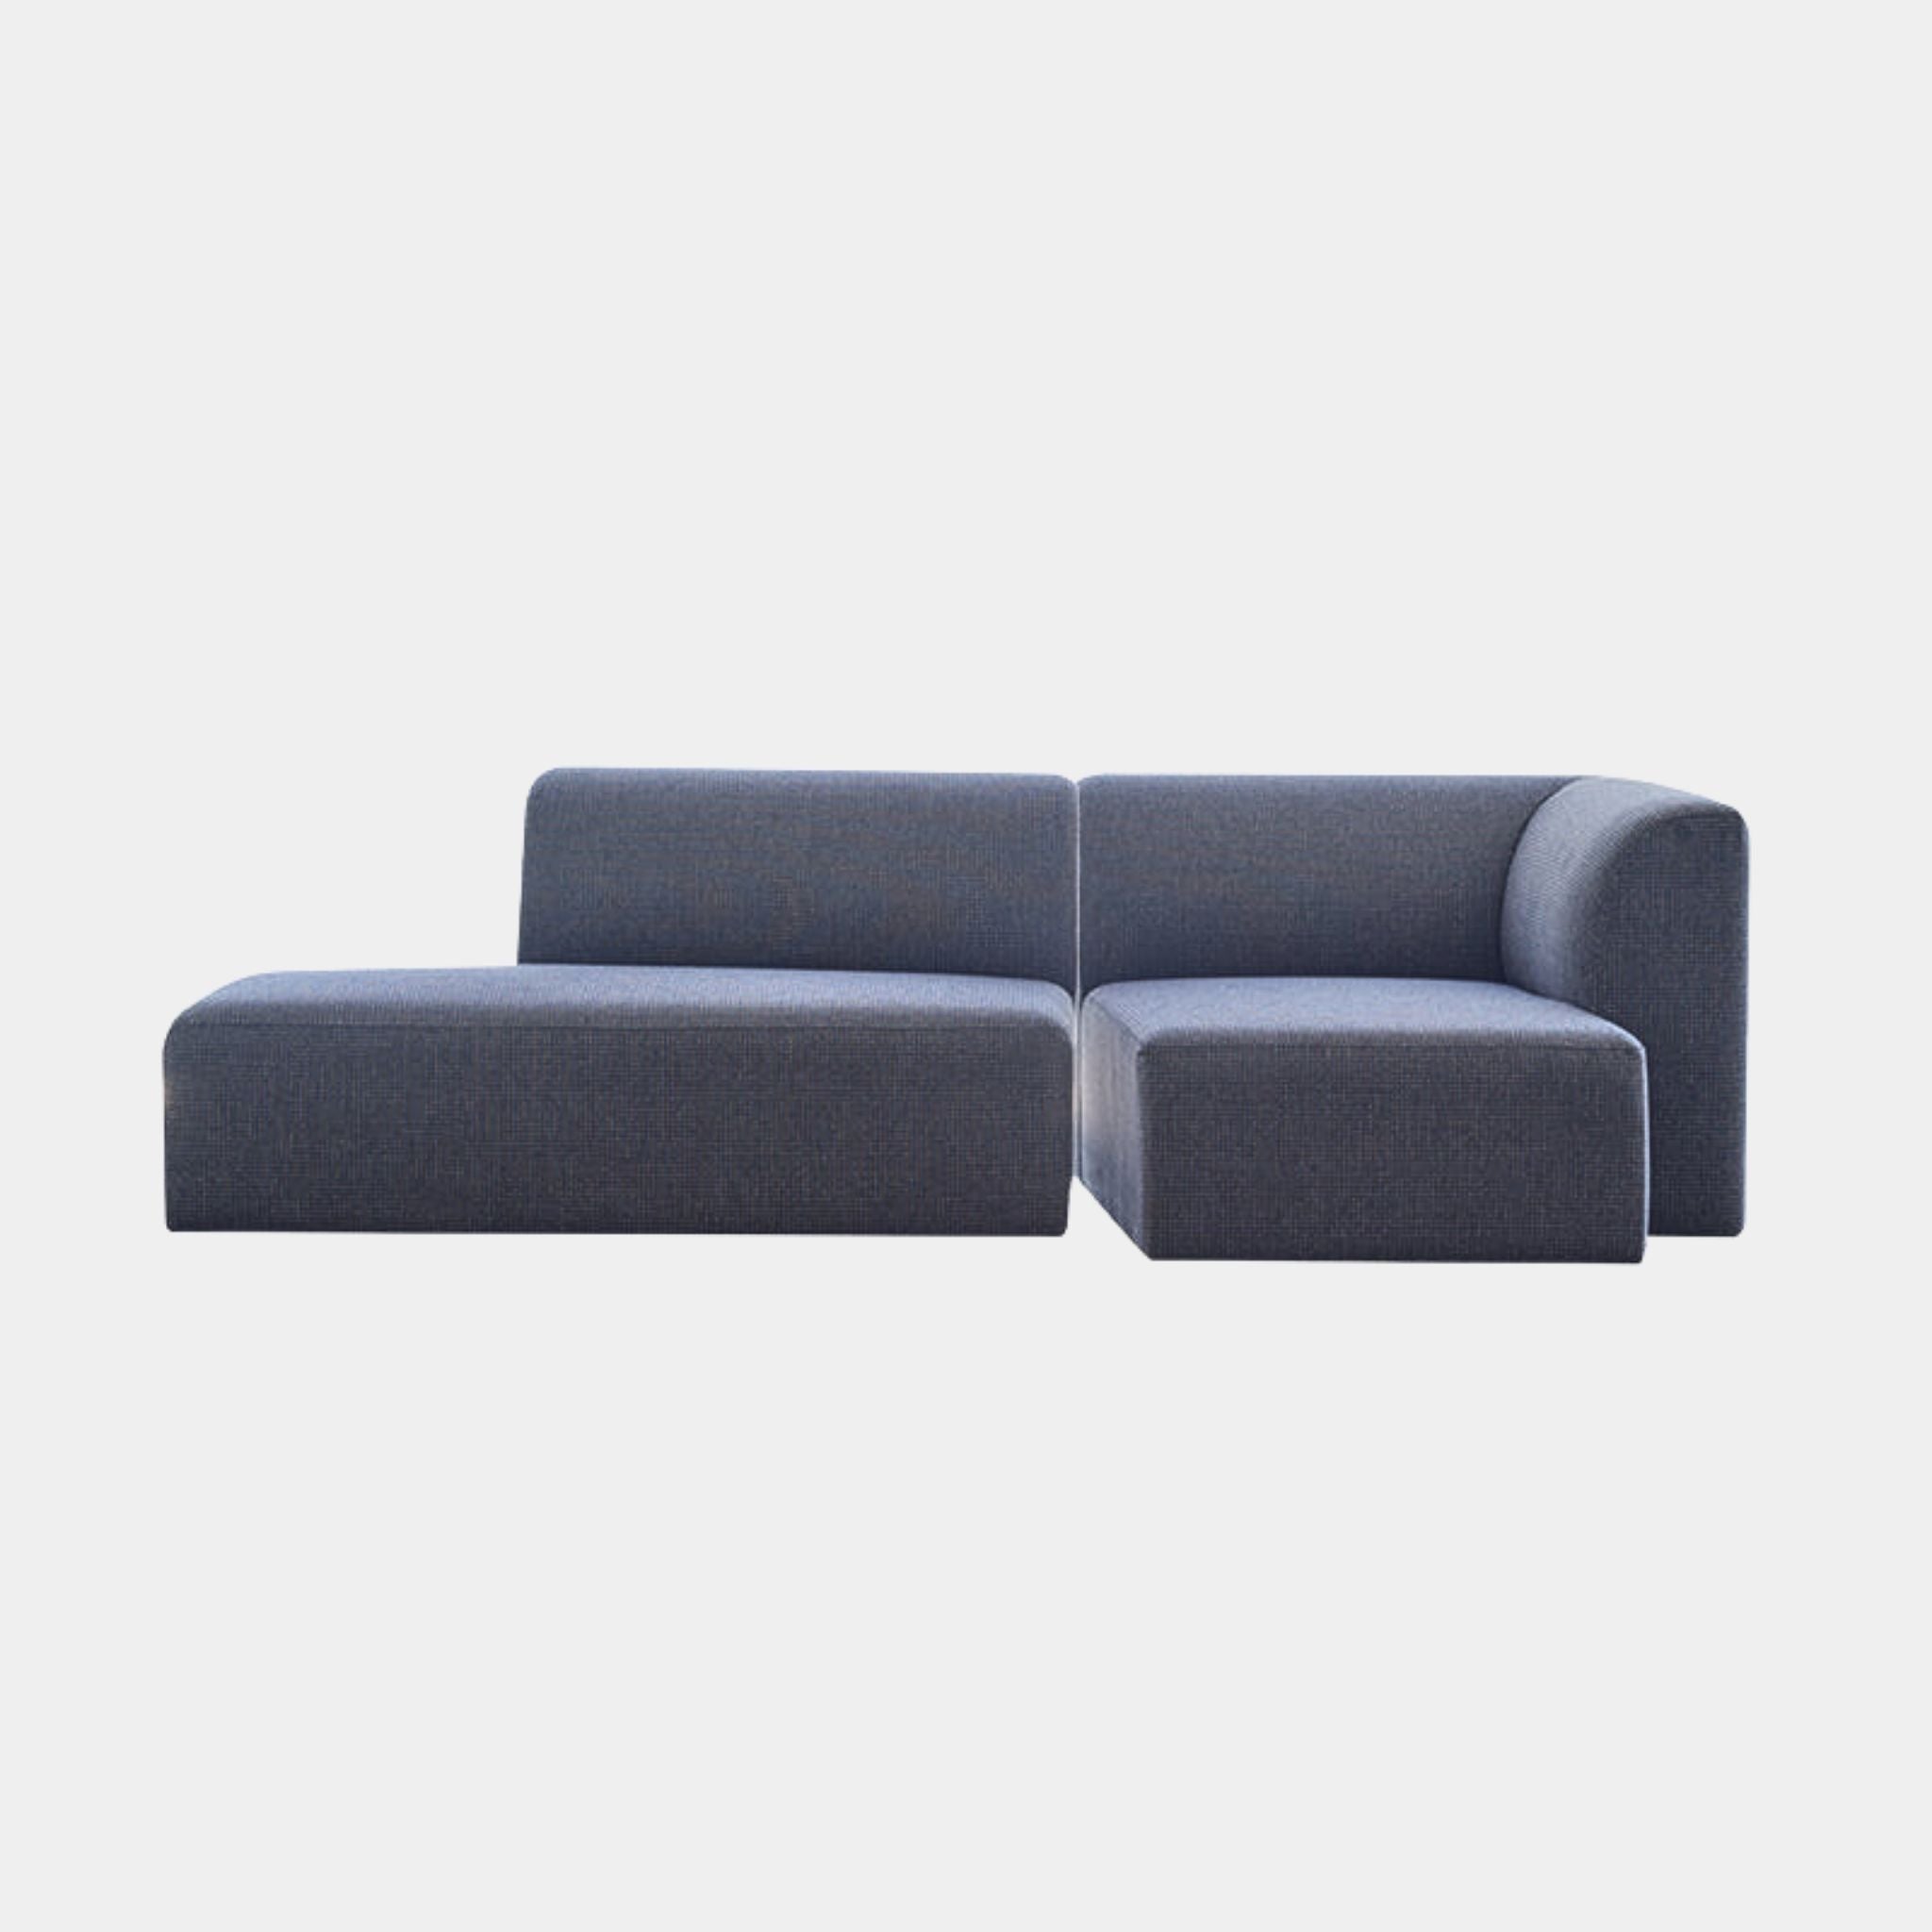 Slab Modular Sofa - The Feelter